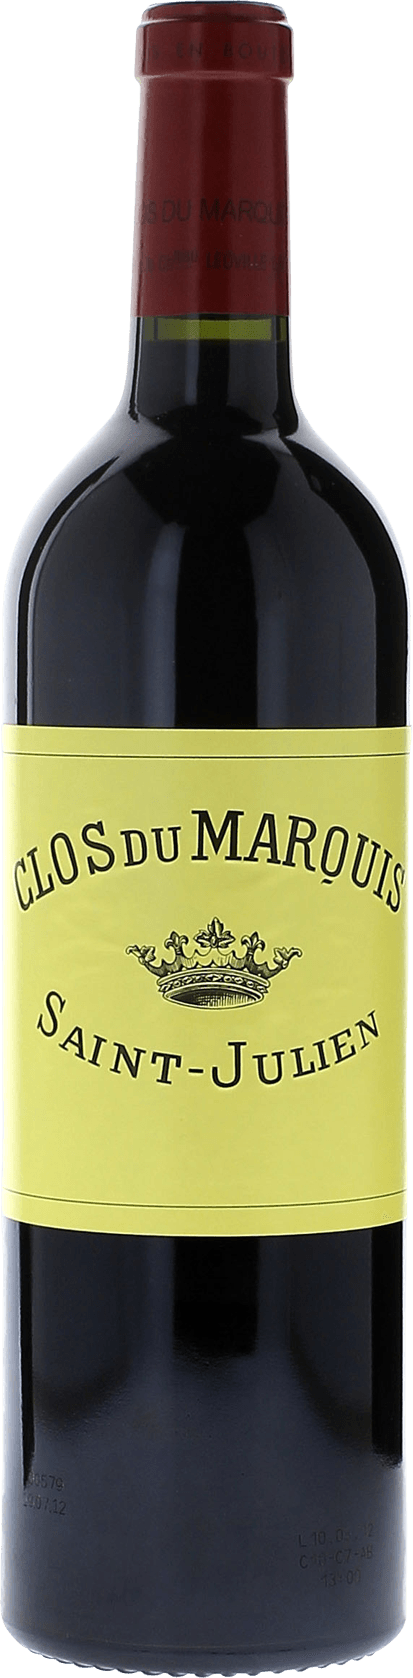 Clos du marquis 1983 2me vin de LEOVILLE LAS CASES Saint-Julien, Bordeaux rouge